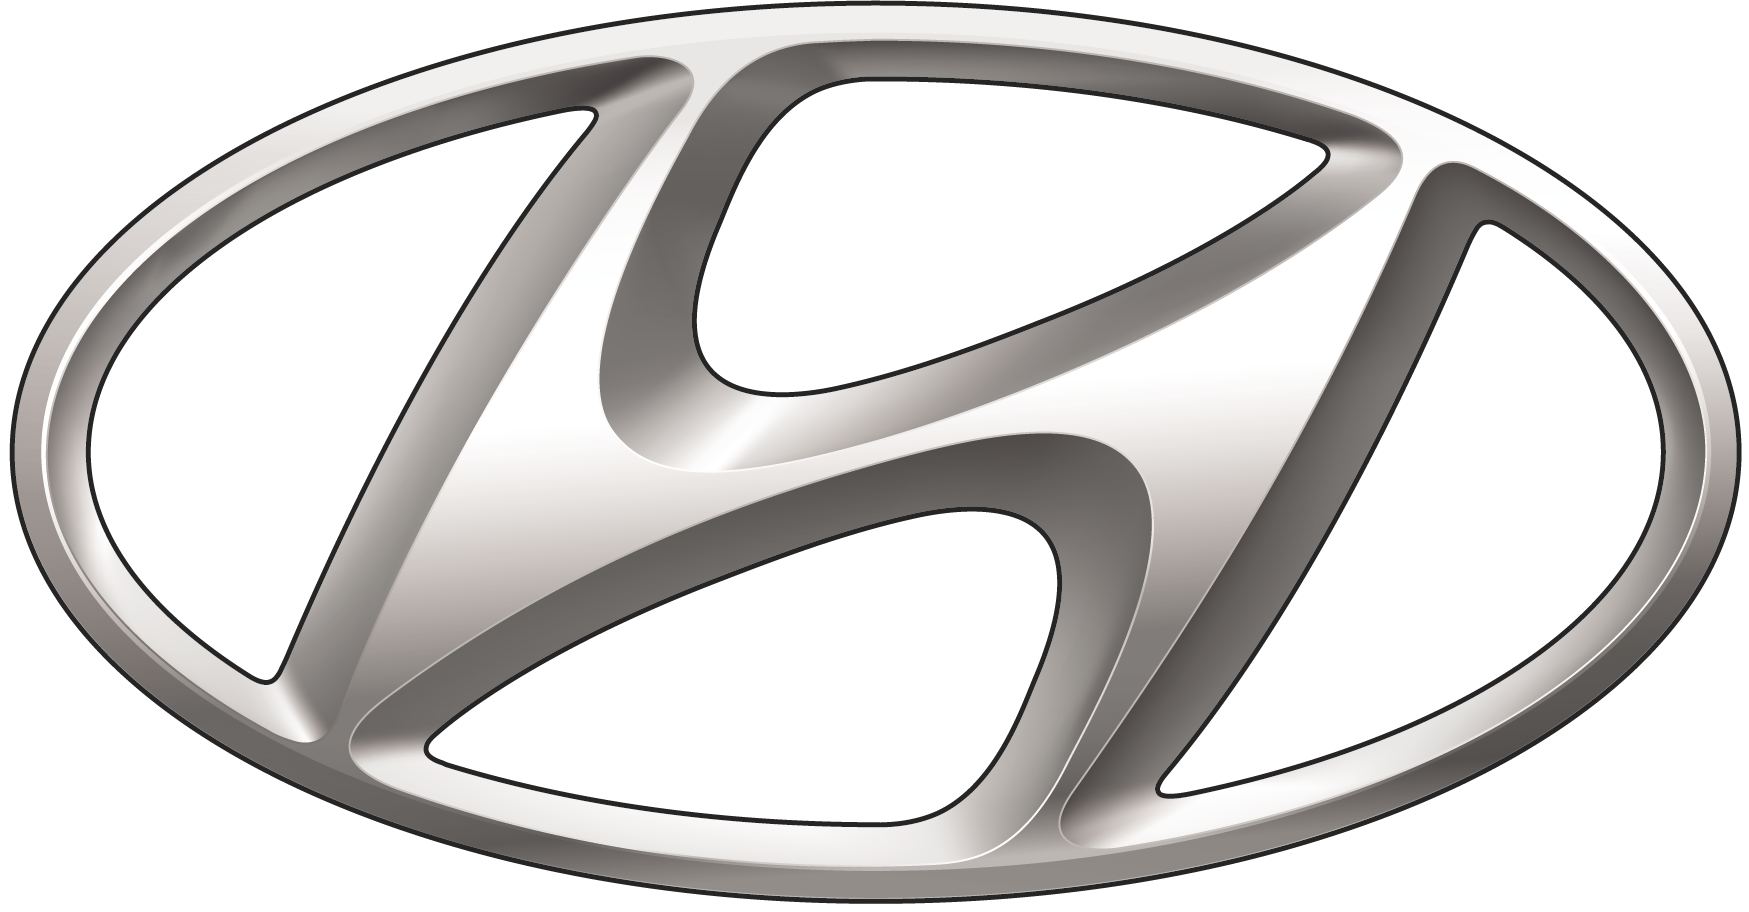 hyundai logo 2